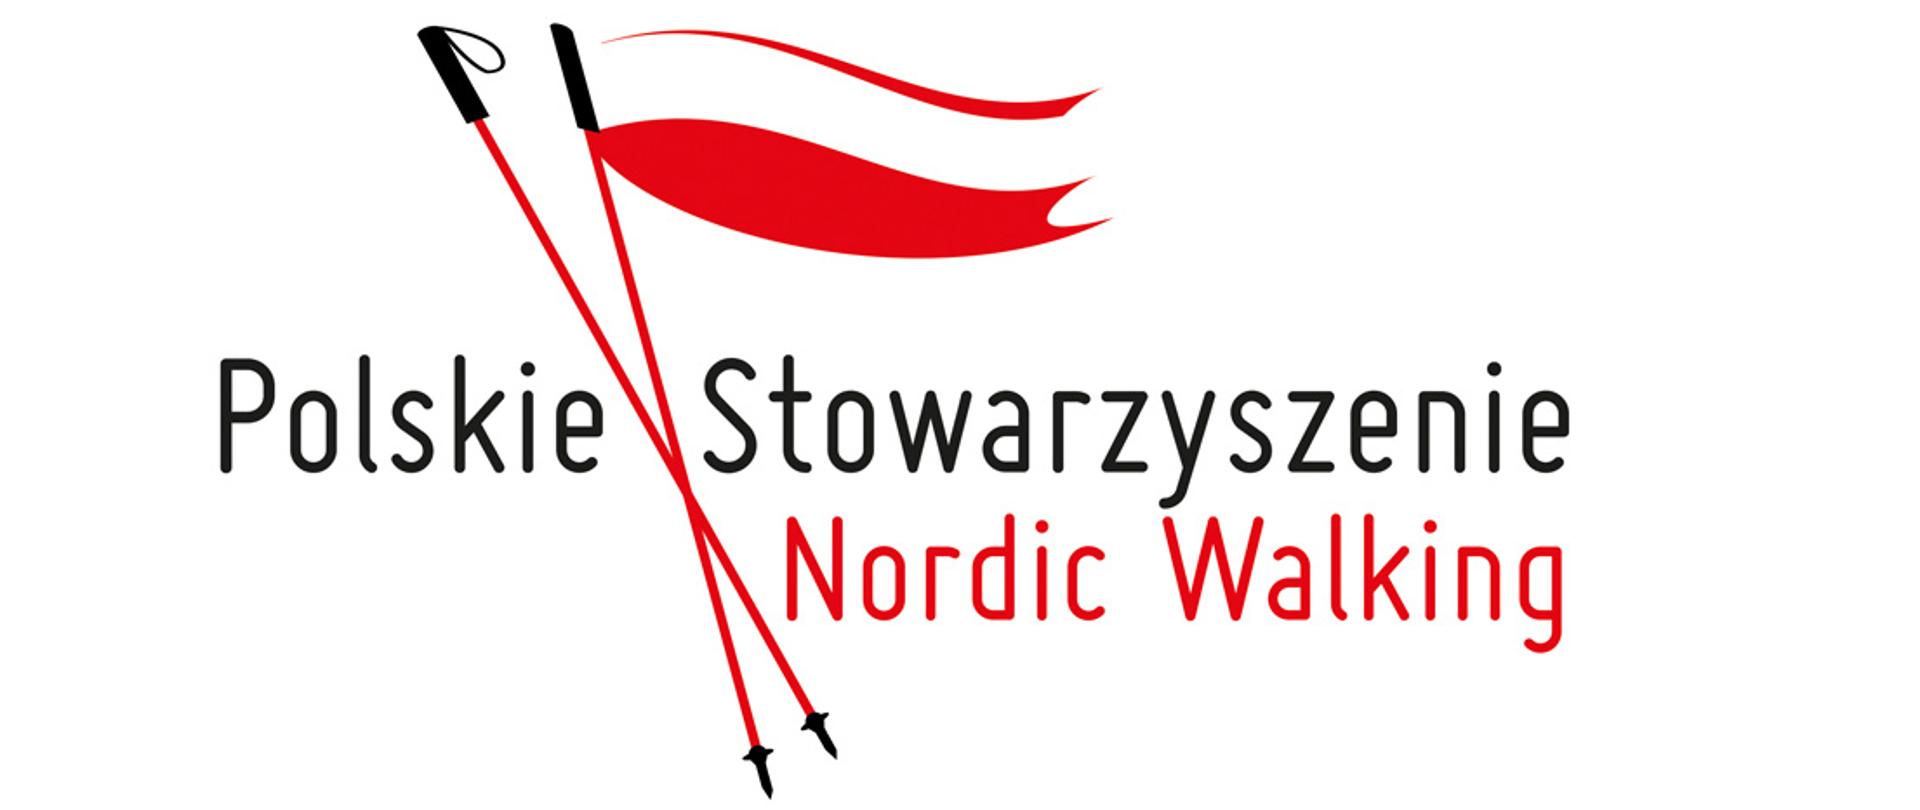 Polskie Stowarzyszenie Nordic Walking